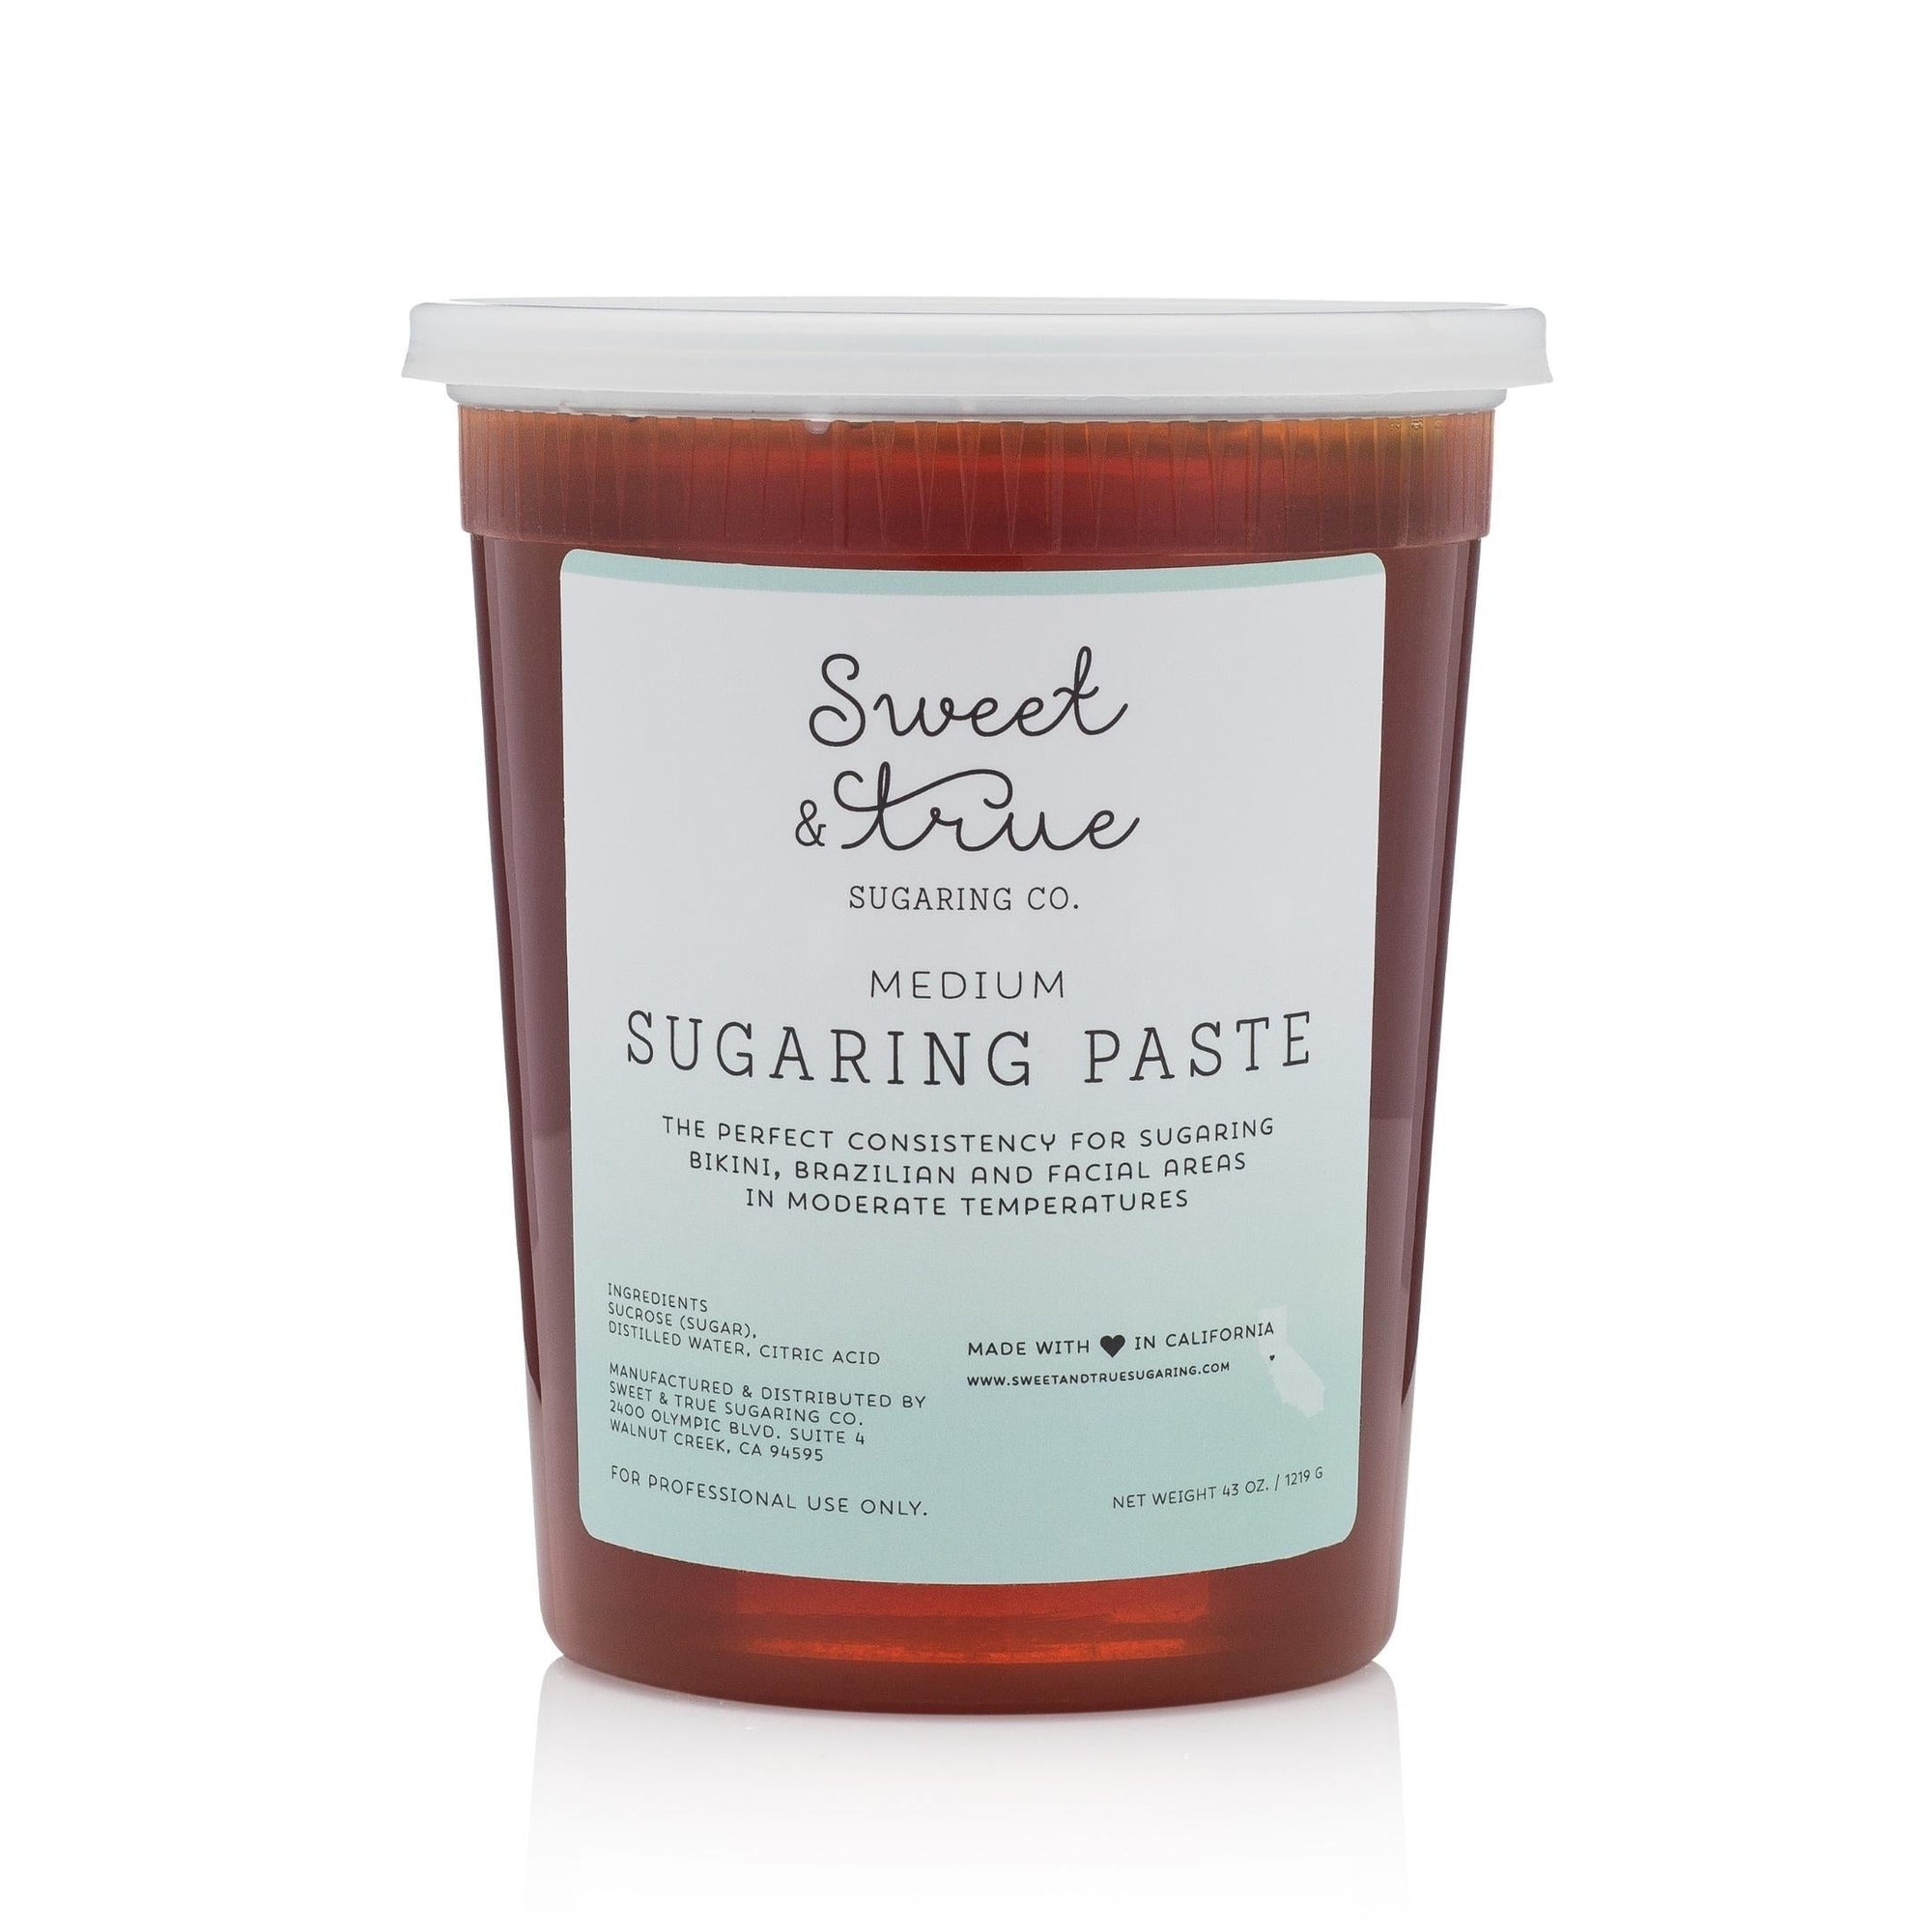 Medium - Sugaring Paste (43 oz.)